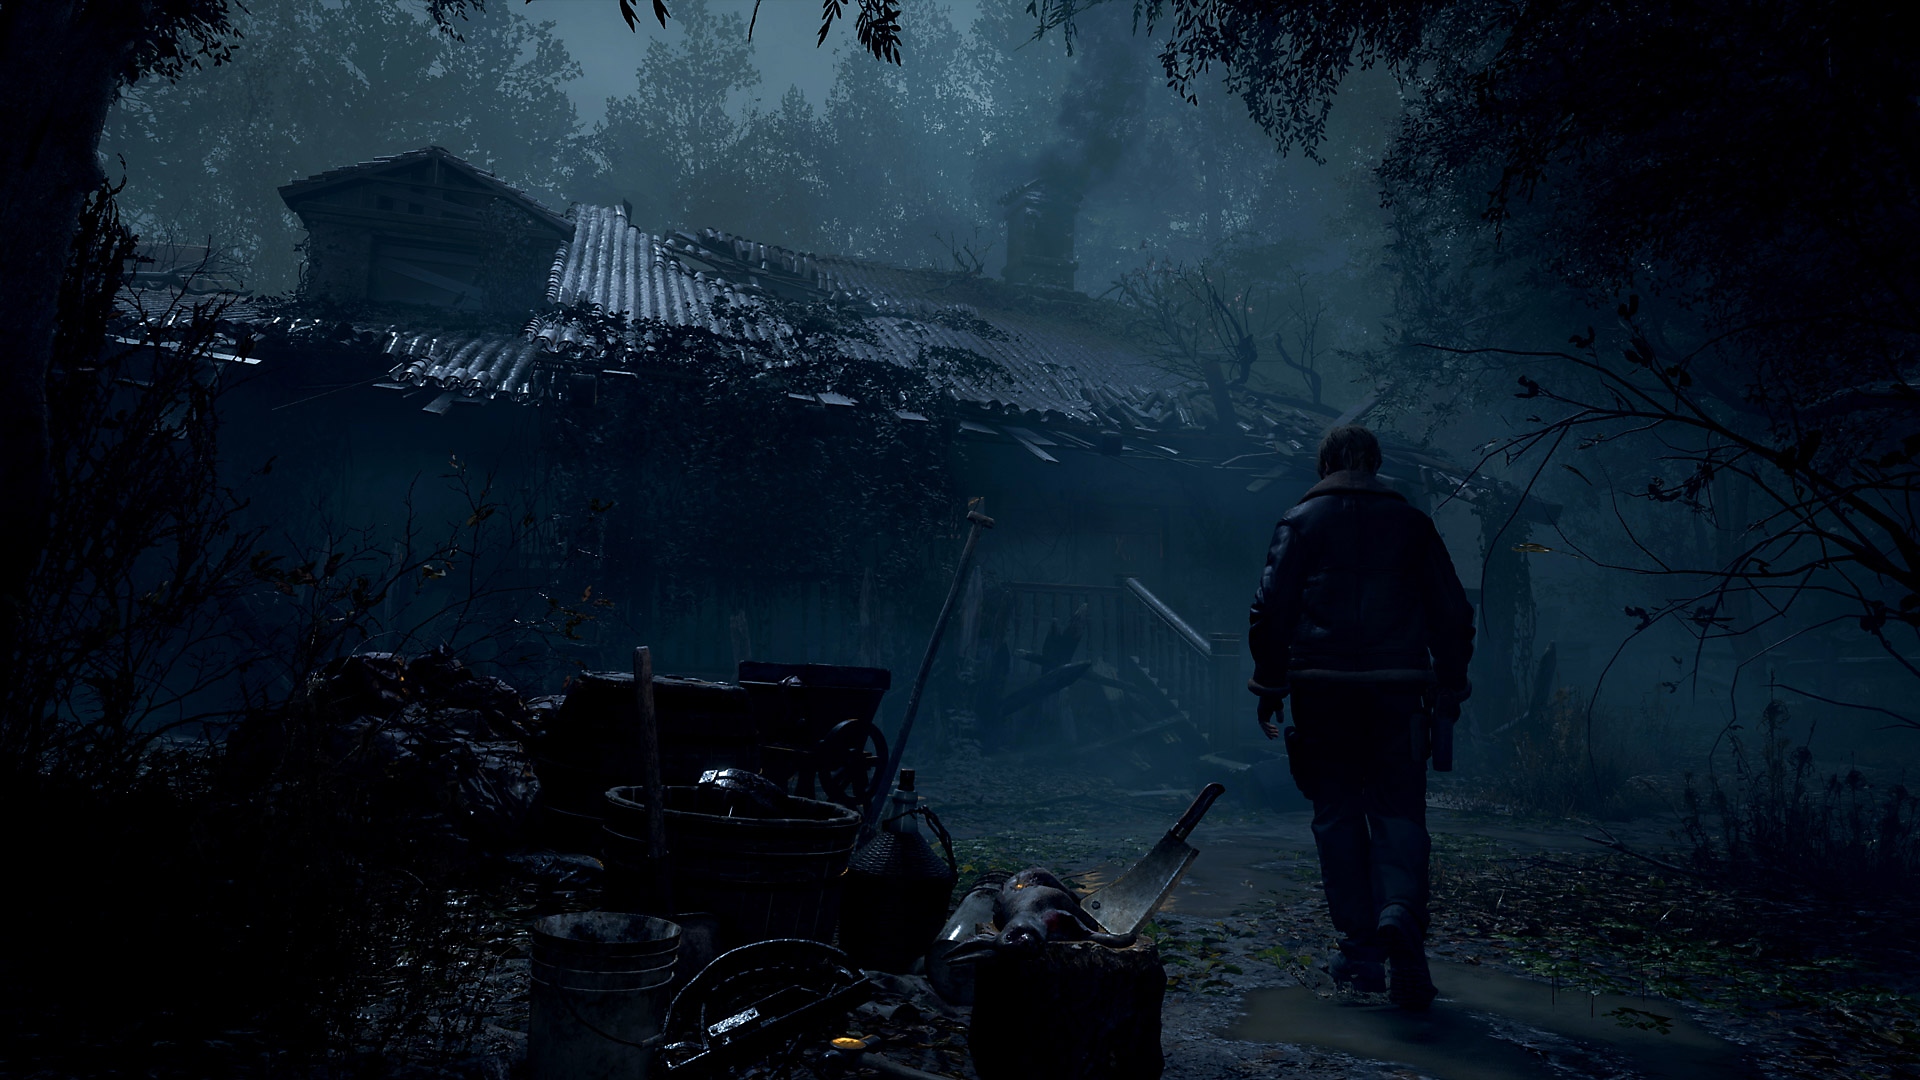 Resident Evil 4 – skärmbild på Leon Kennedy som närmar sig ett förfallet lantligt hus.